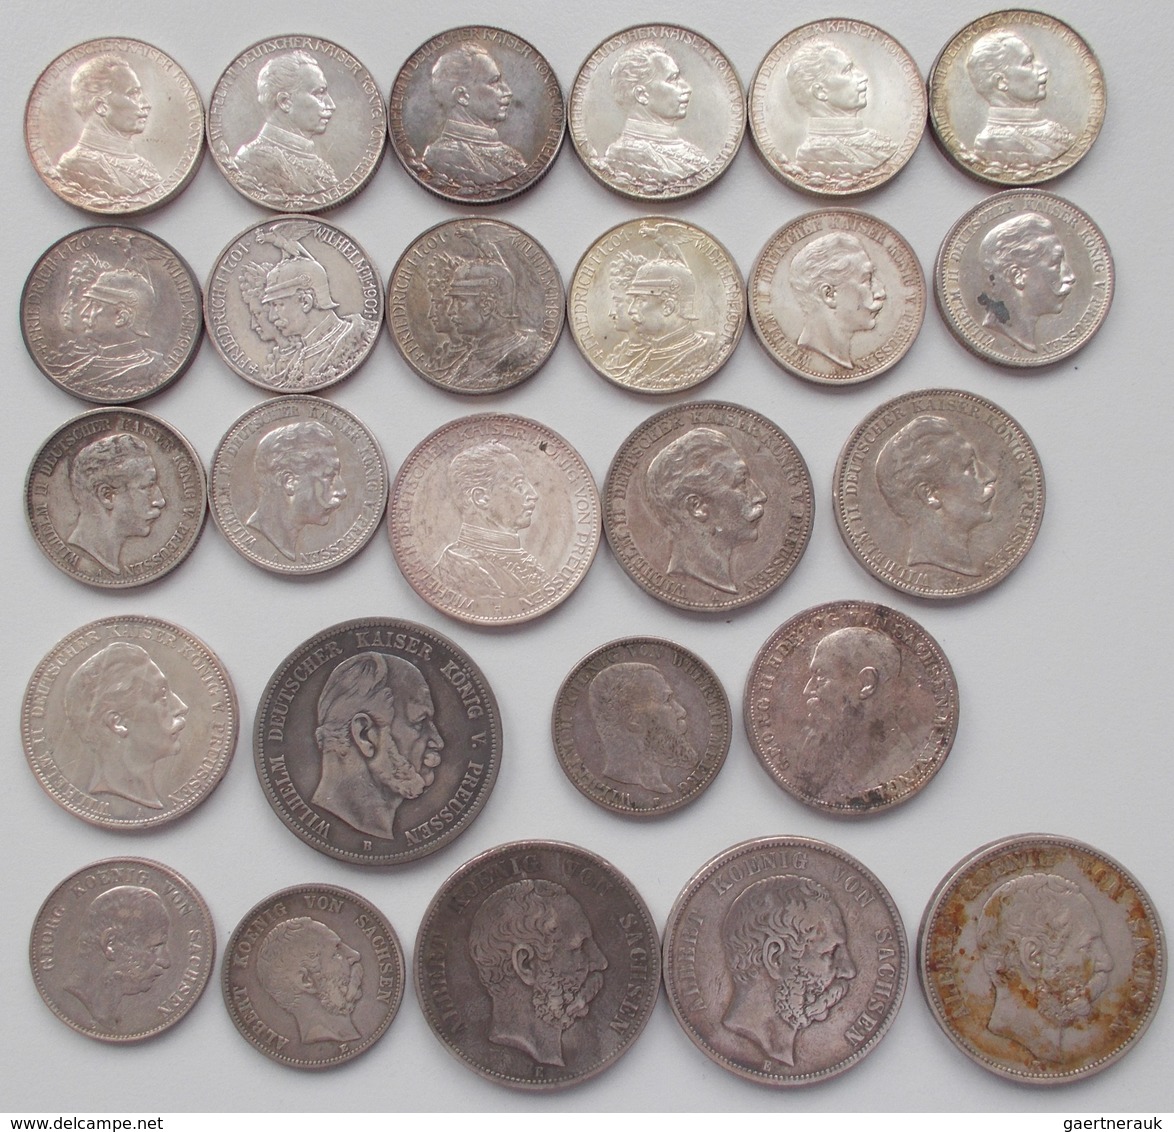 Umlaufmünzen 2 Mark Bis 5 Mark: Lot 26 Münzen, 2 Mark, 3 Mark, 5 Mark, überwiegend Preußen. - Taler & Doppeltaler